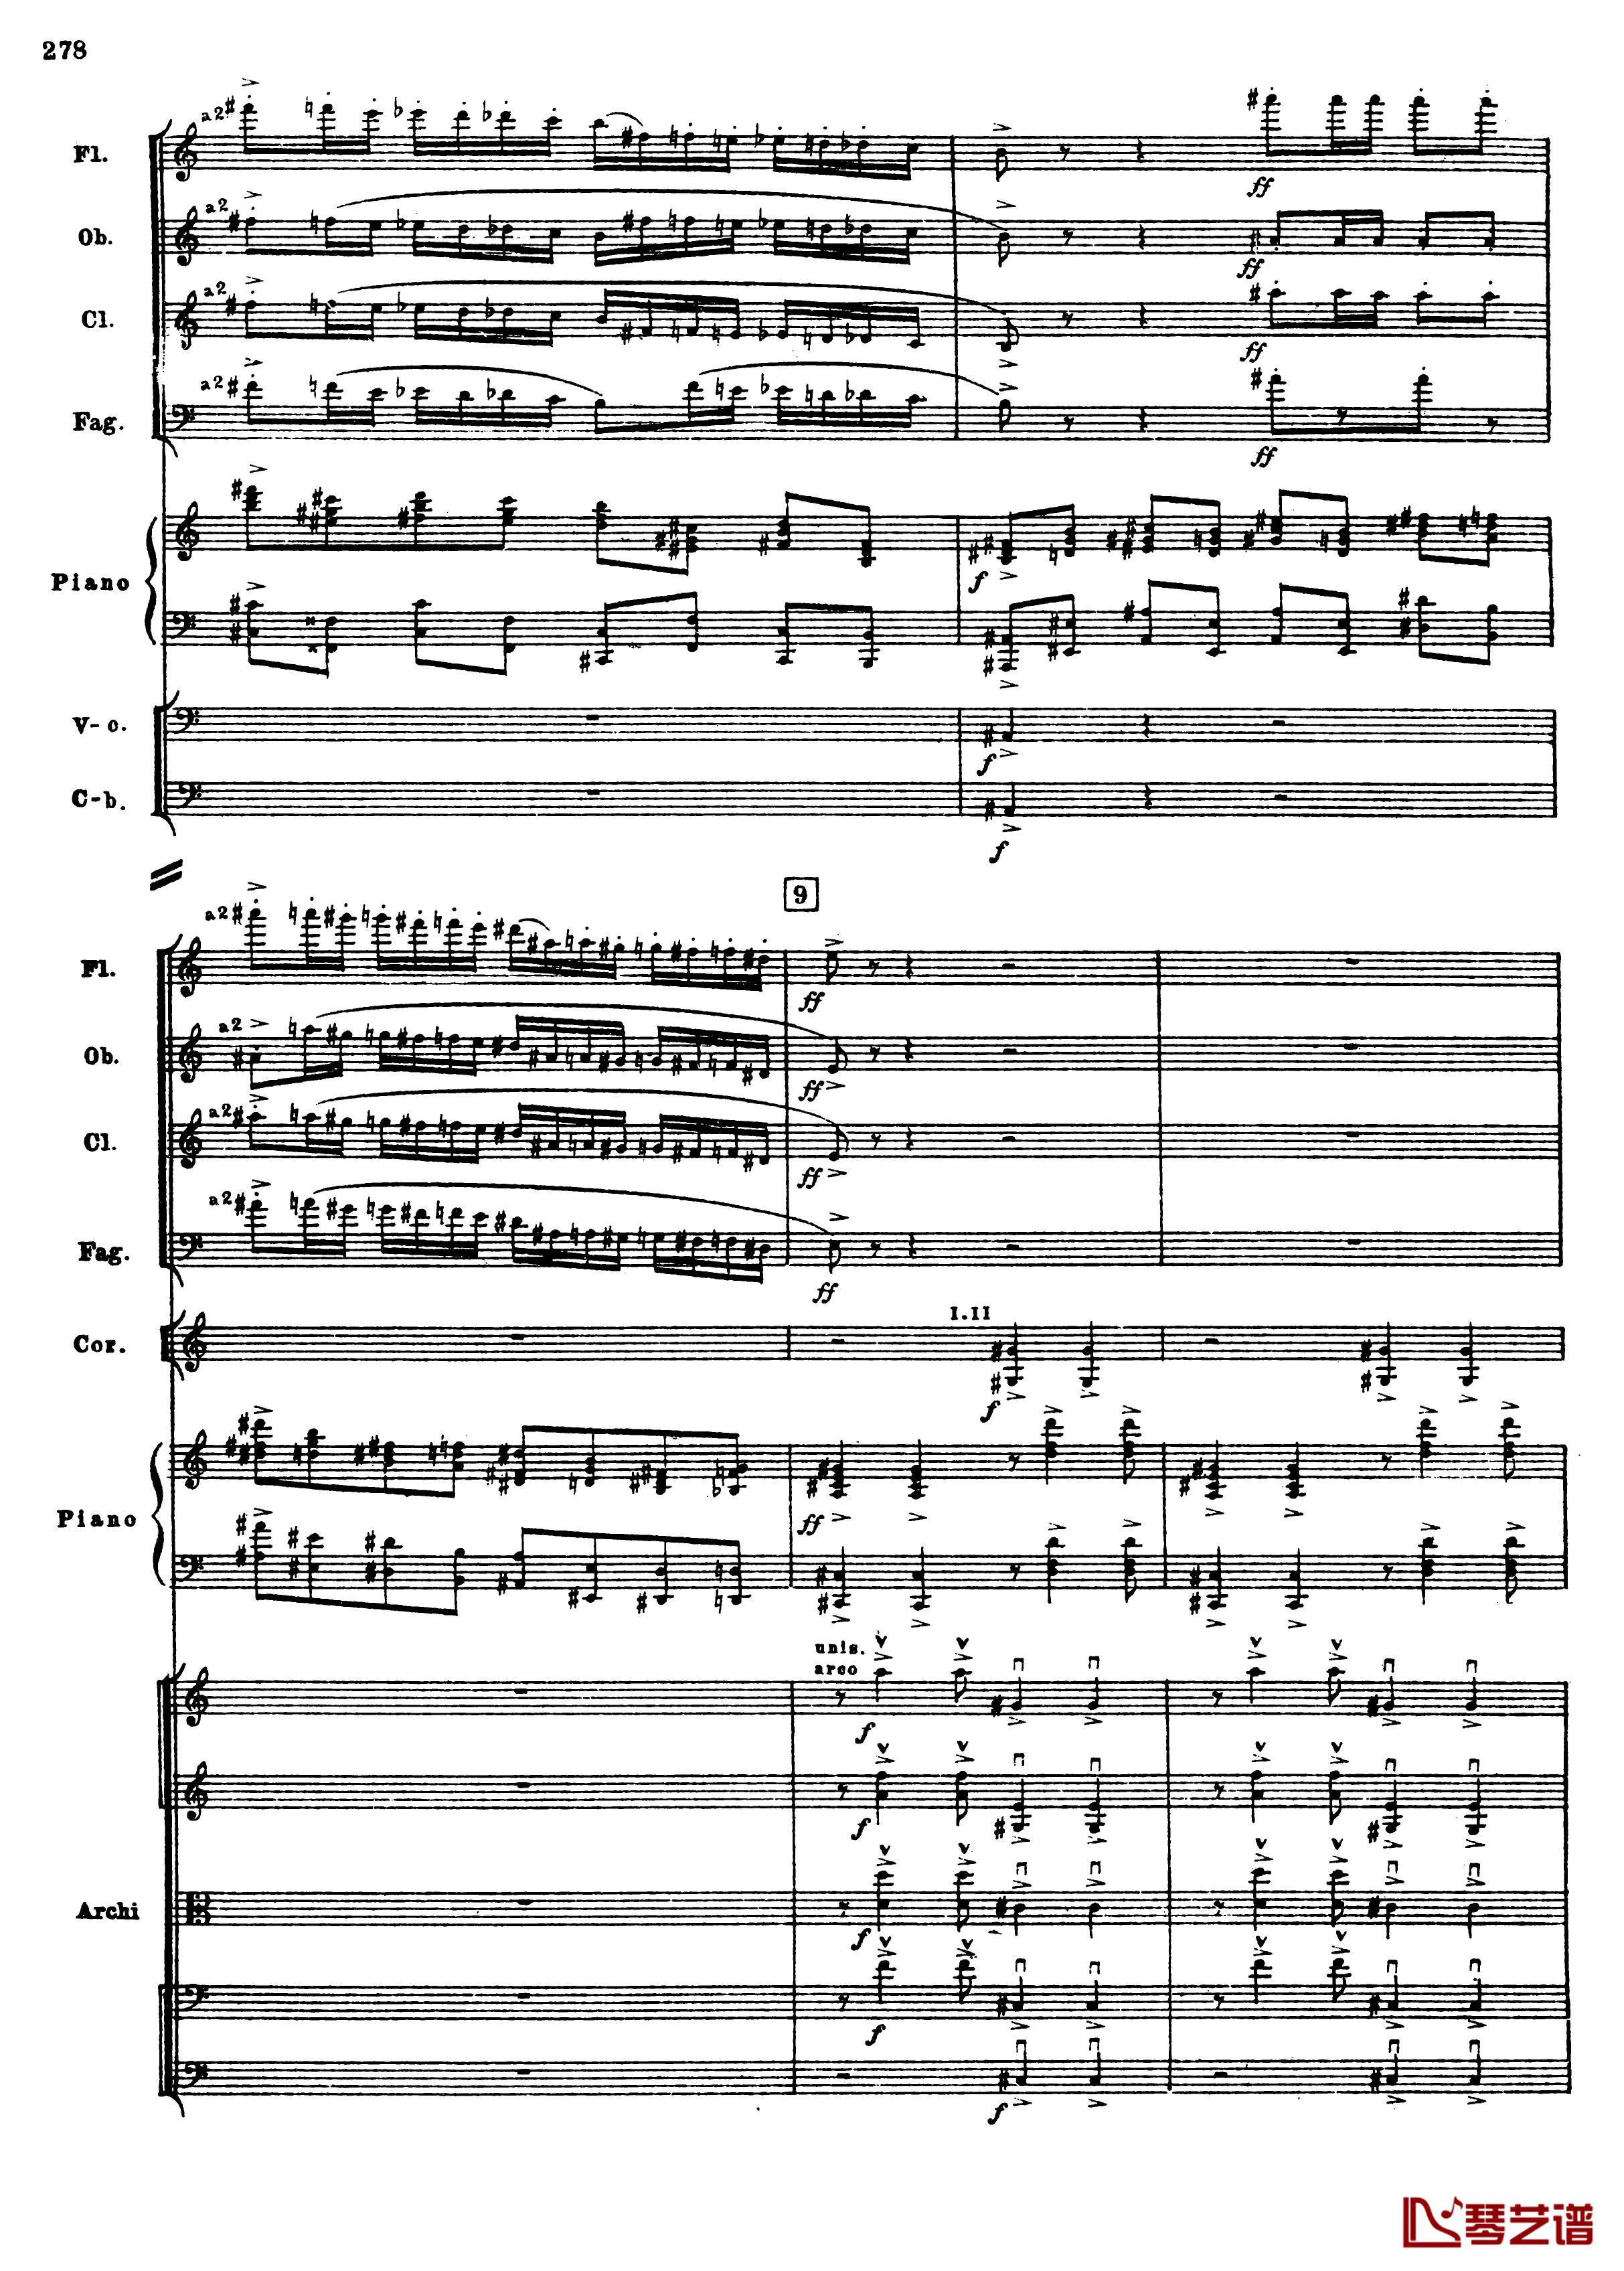 普罗科菲耶夫第三钢琴协奏曲钢琴谱-总谱-普罗科非耶夫10